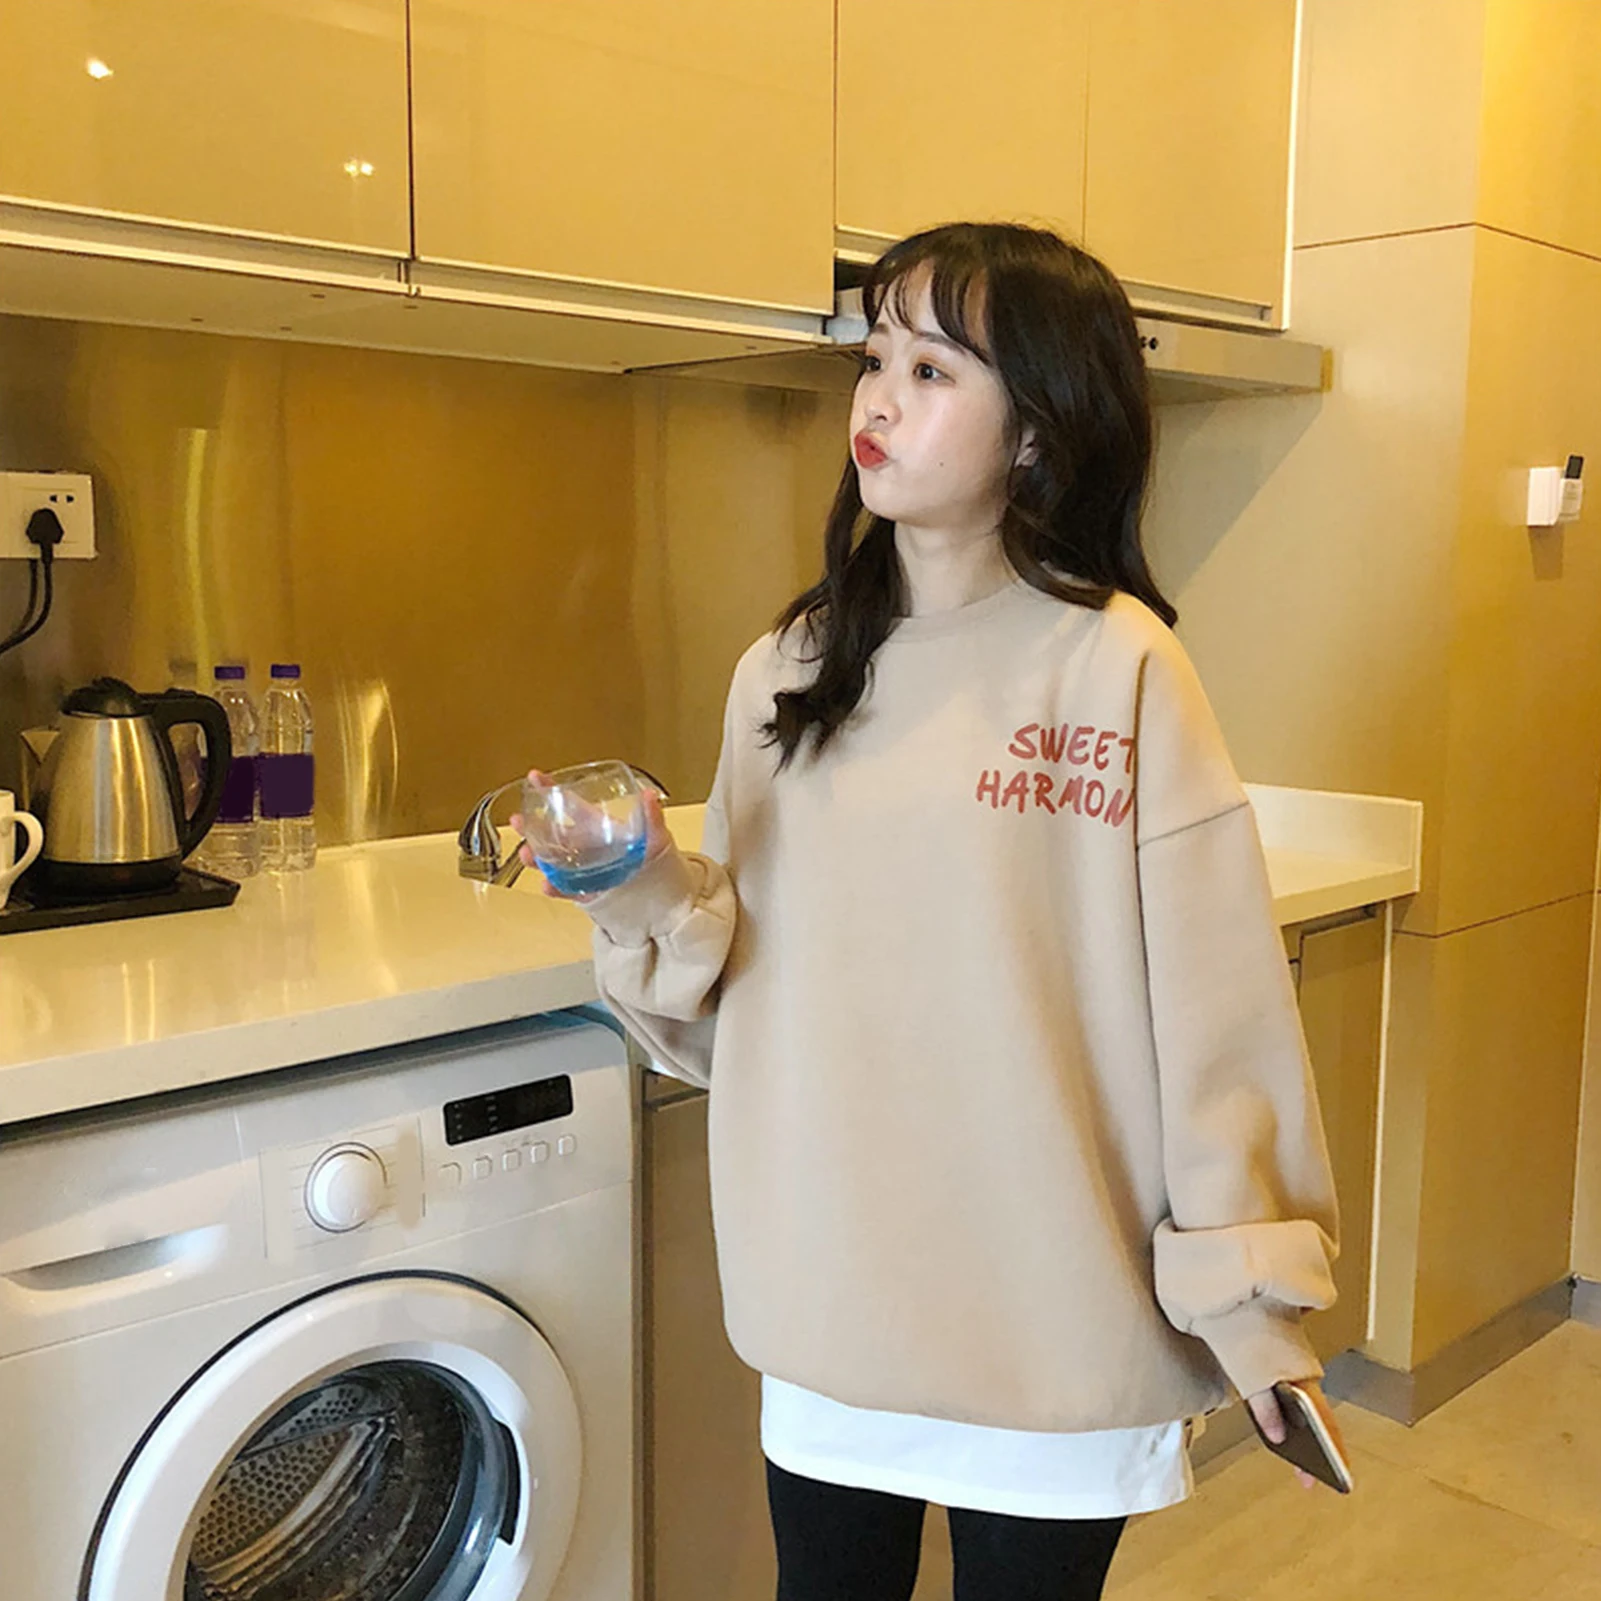 Women Hoodies Large Size Leisure Letter Printed Long Sleeve Hooded Pullovers Casual Korean Sweatshirt Tops enlarge